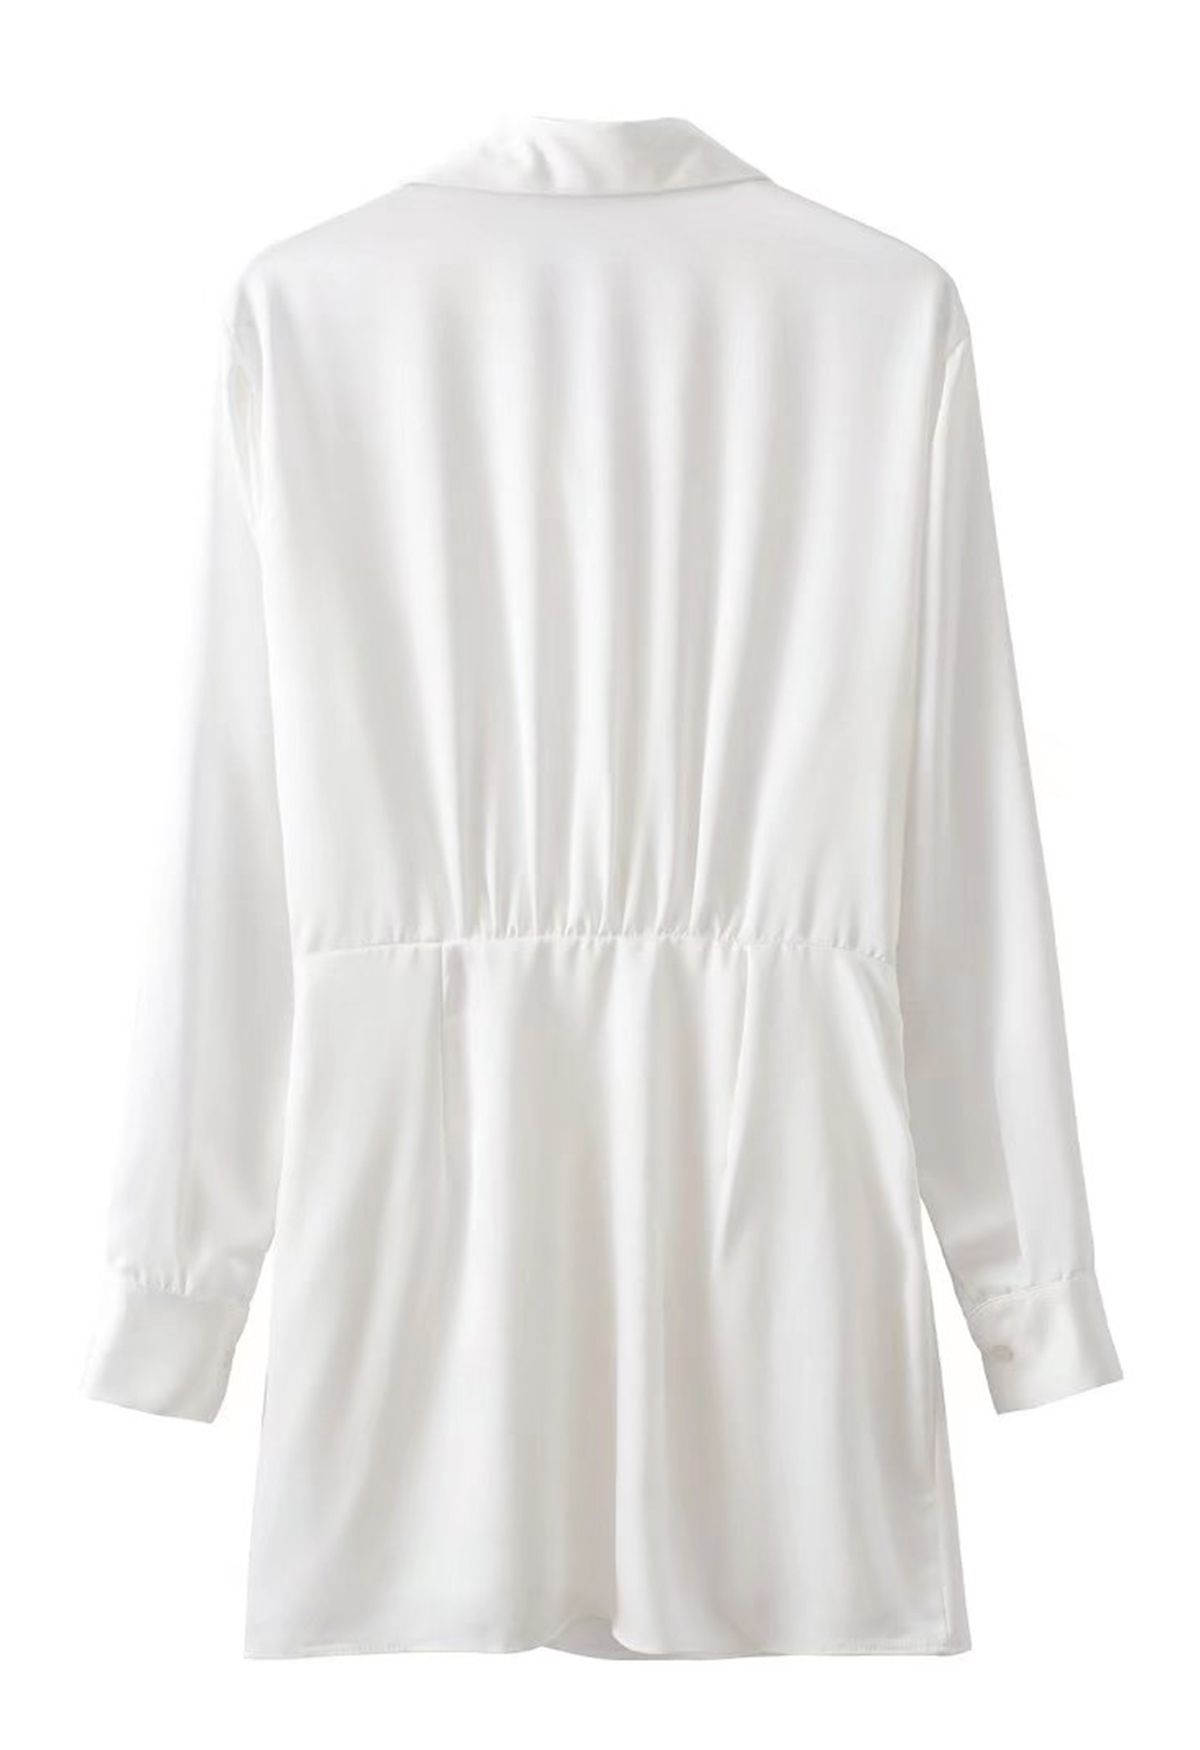 Vestido de camisa de cetim com decote em V franzido na frente em branco